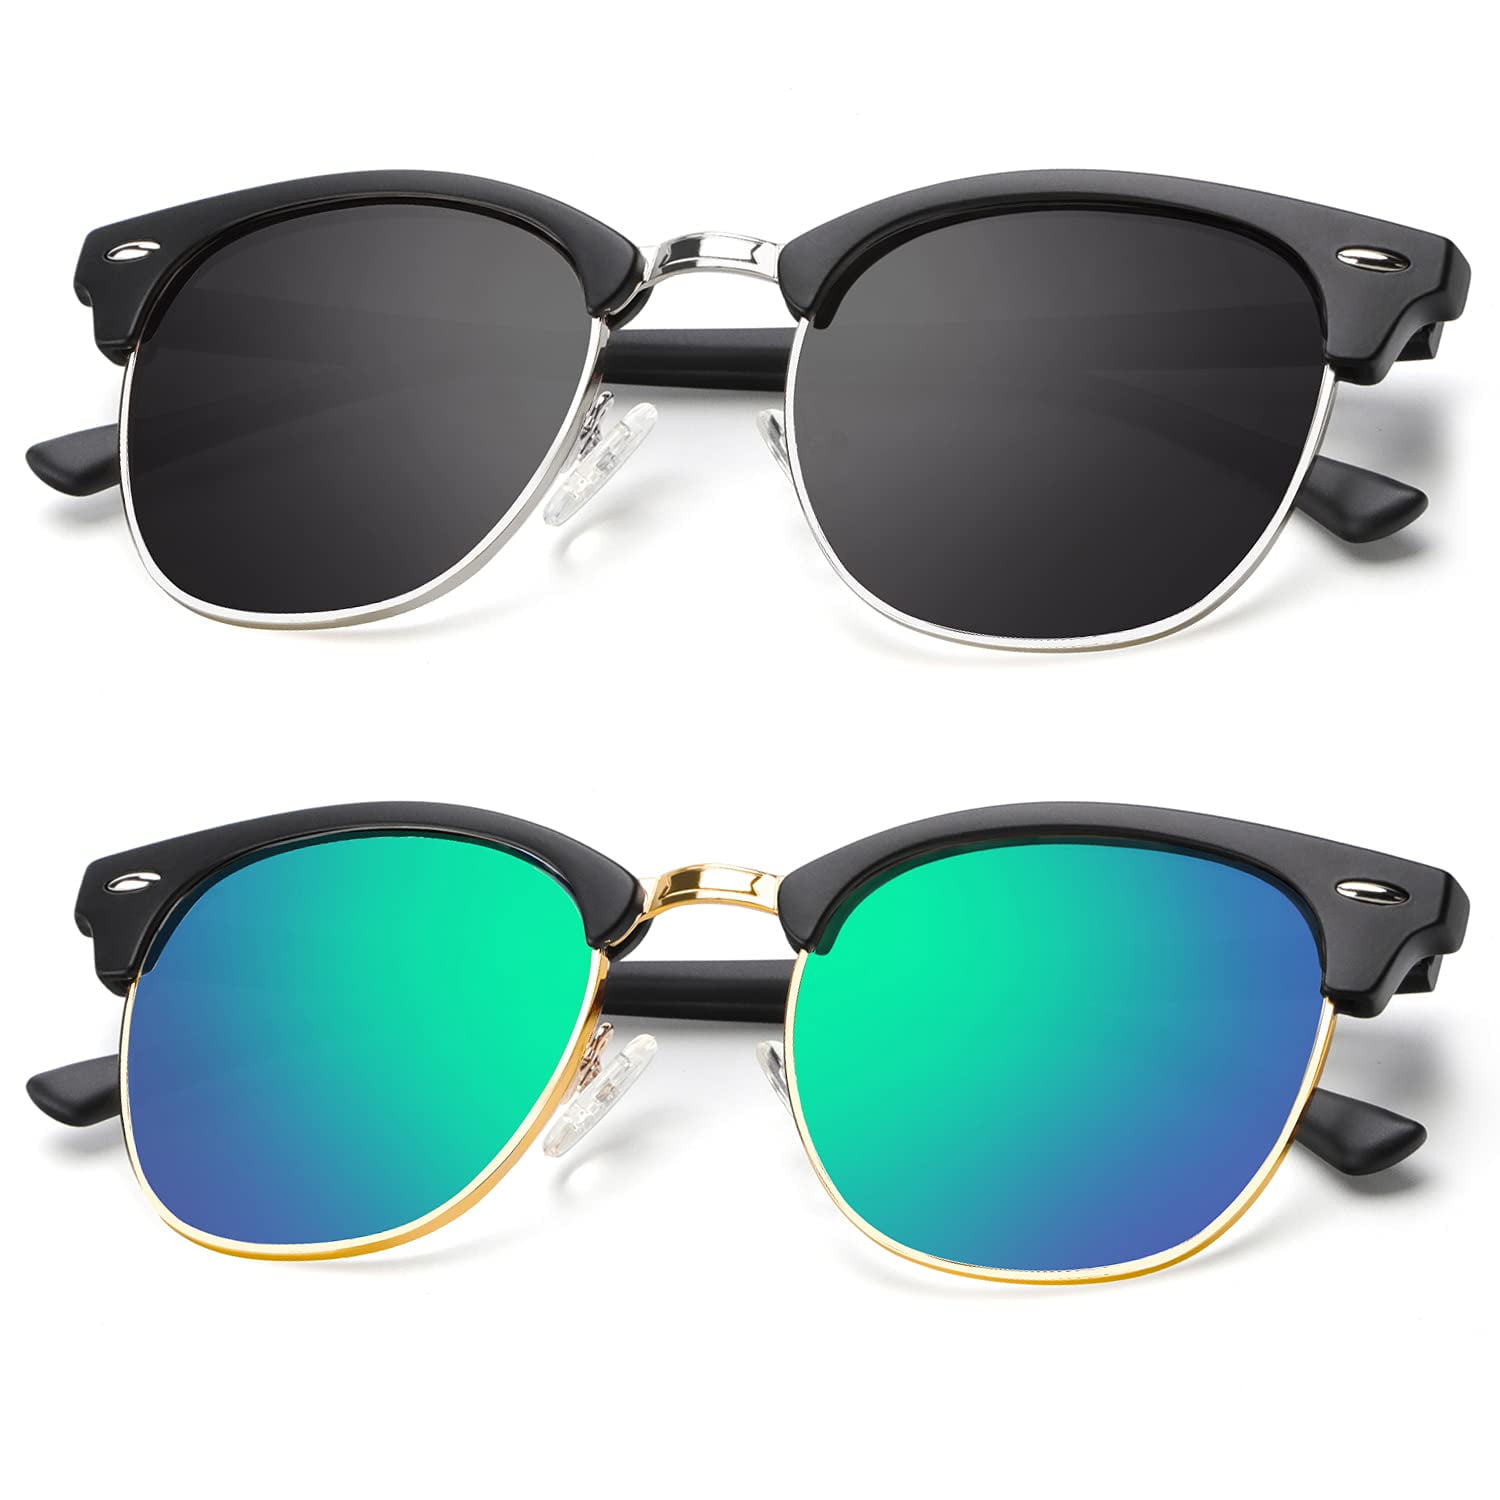 SIPHEW Large Polarised Sunglasses Women/Men-Oversized Frame with 100% UVA/UVB Protection 